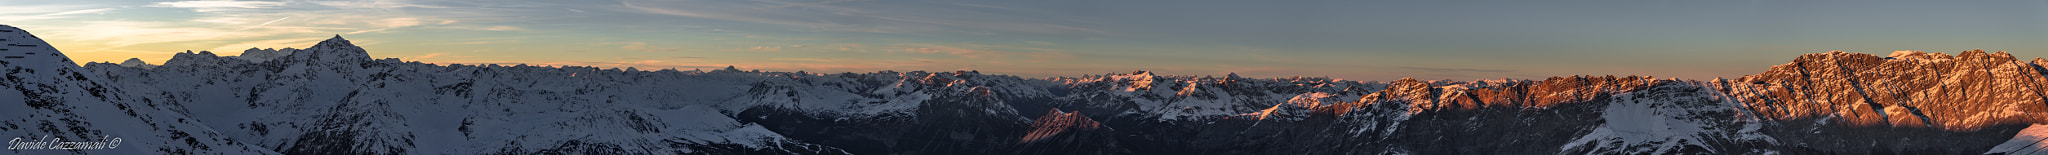 Pentax K-3 sample photo. Panoramica delle alpi retiche photography